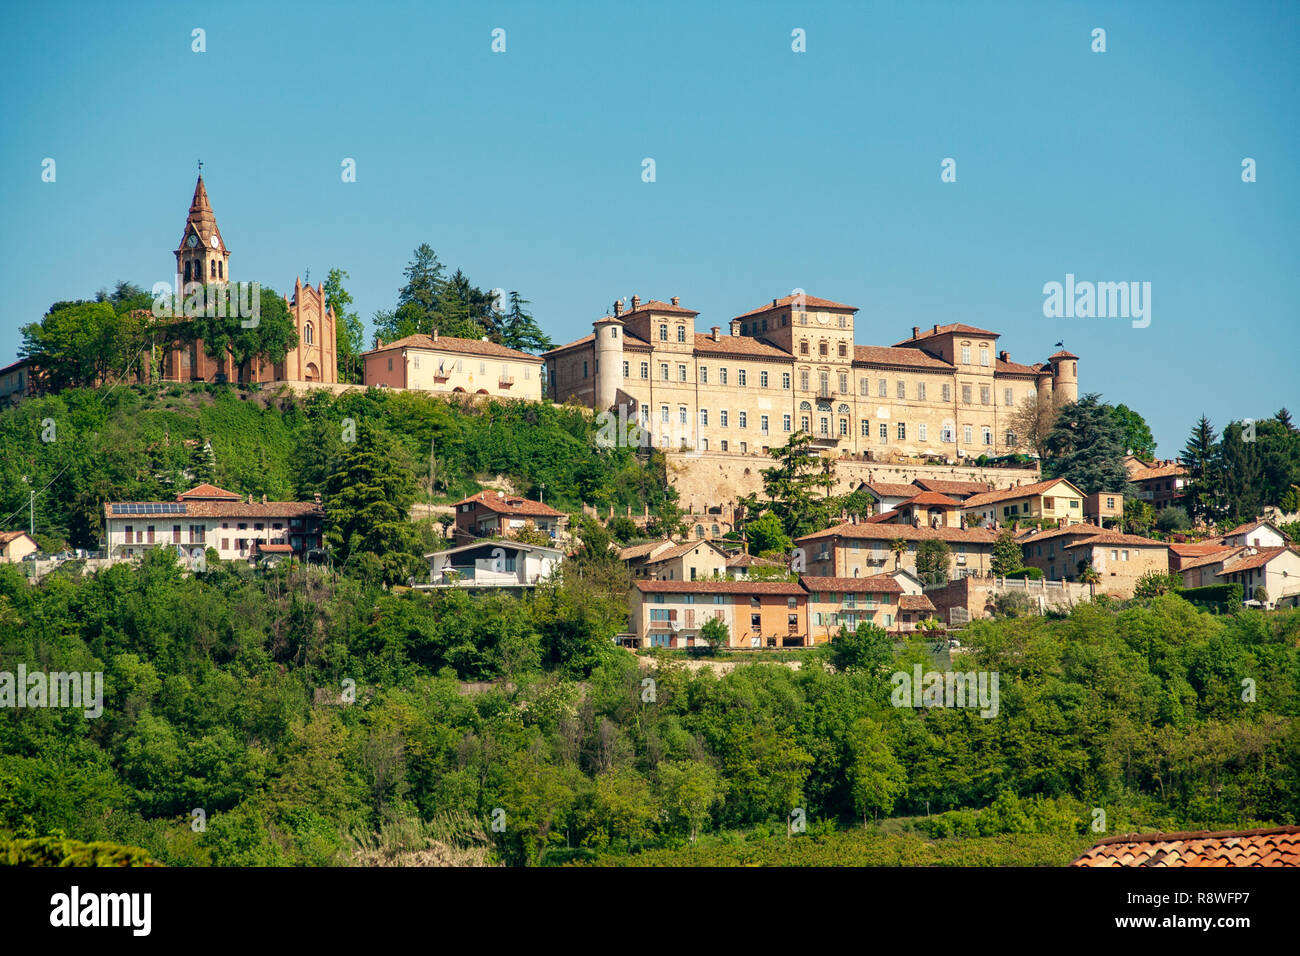 Le village et château de Magliano Alfieri, Piémont, Italie Banque D'Images